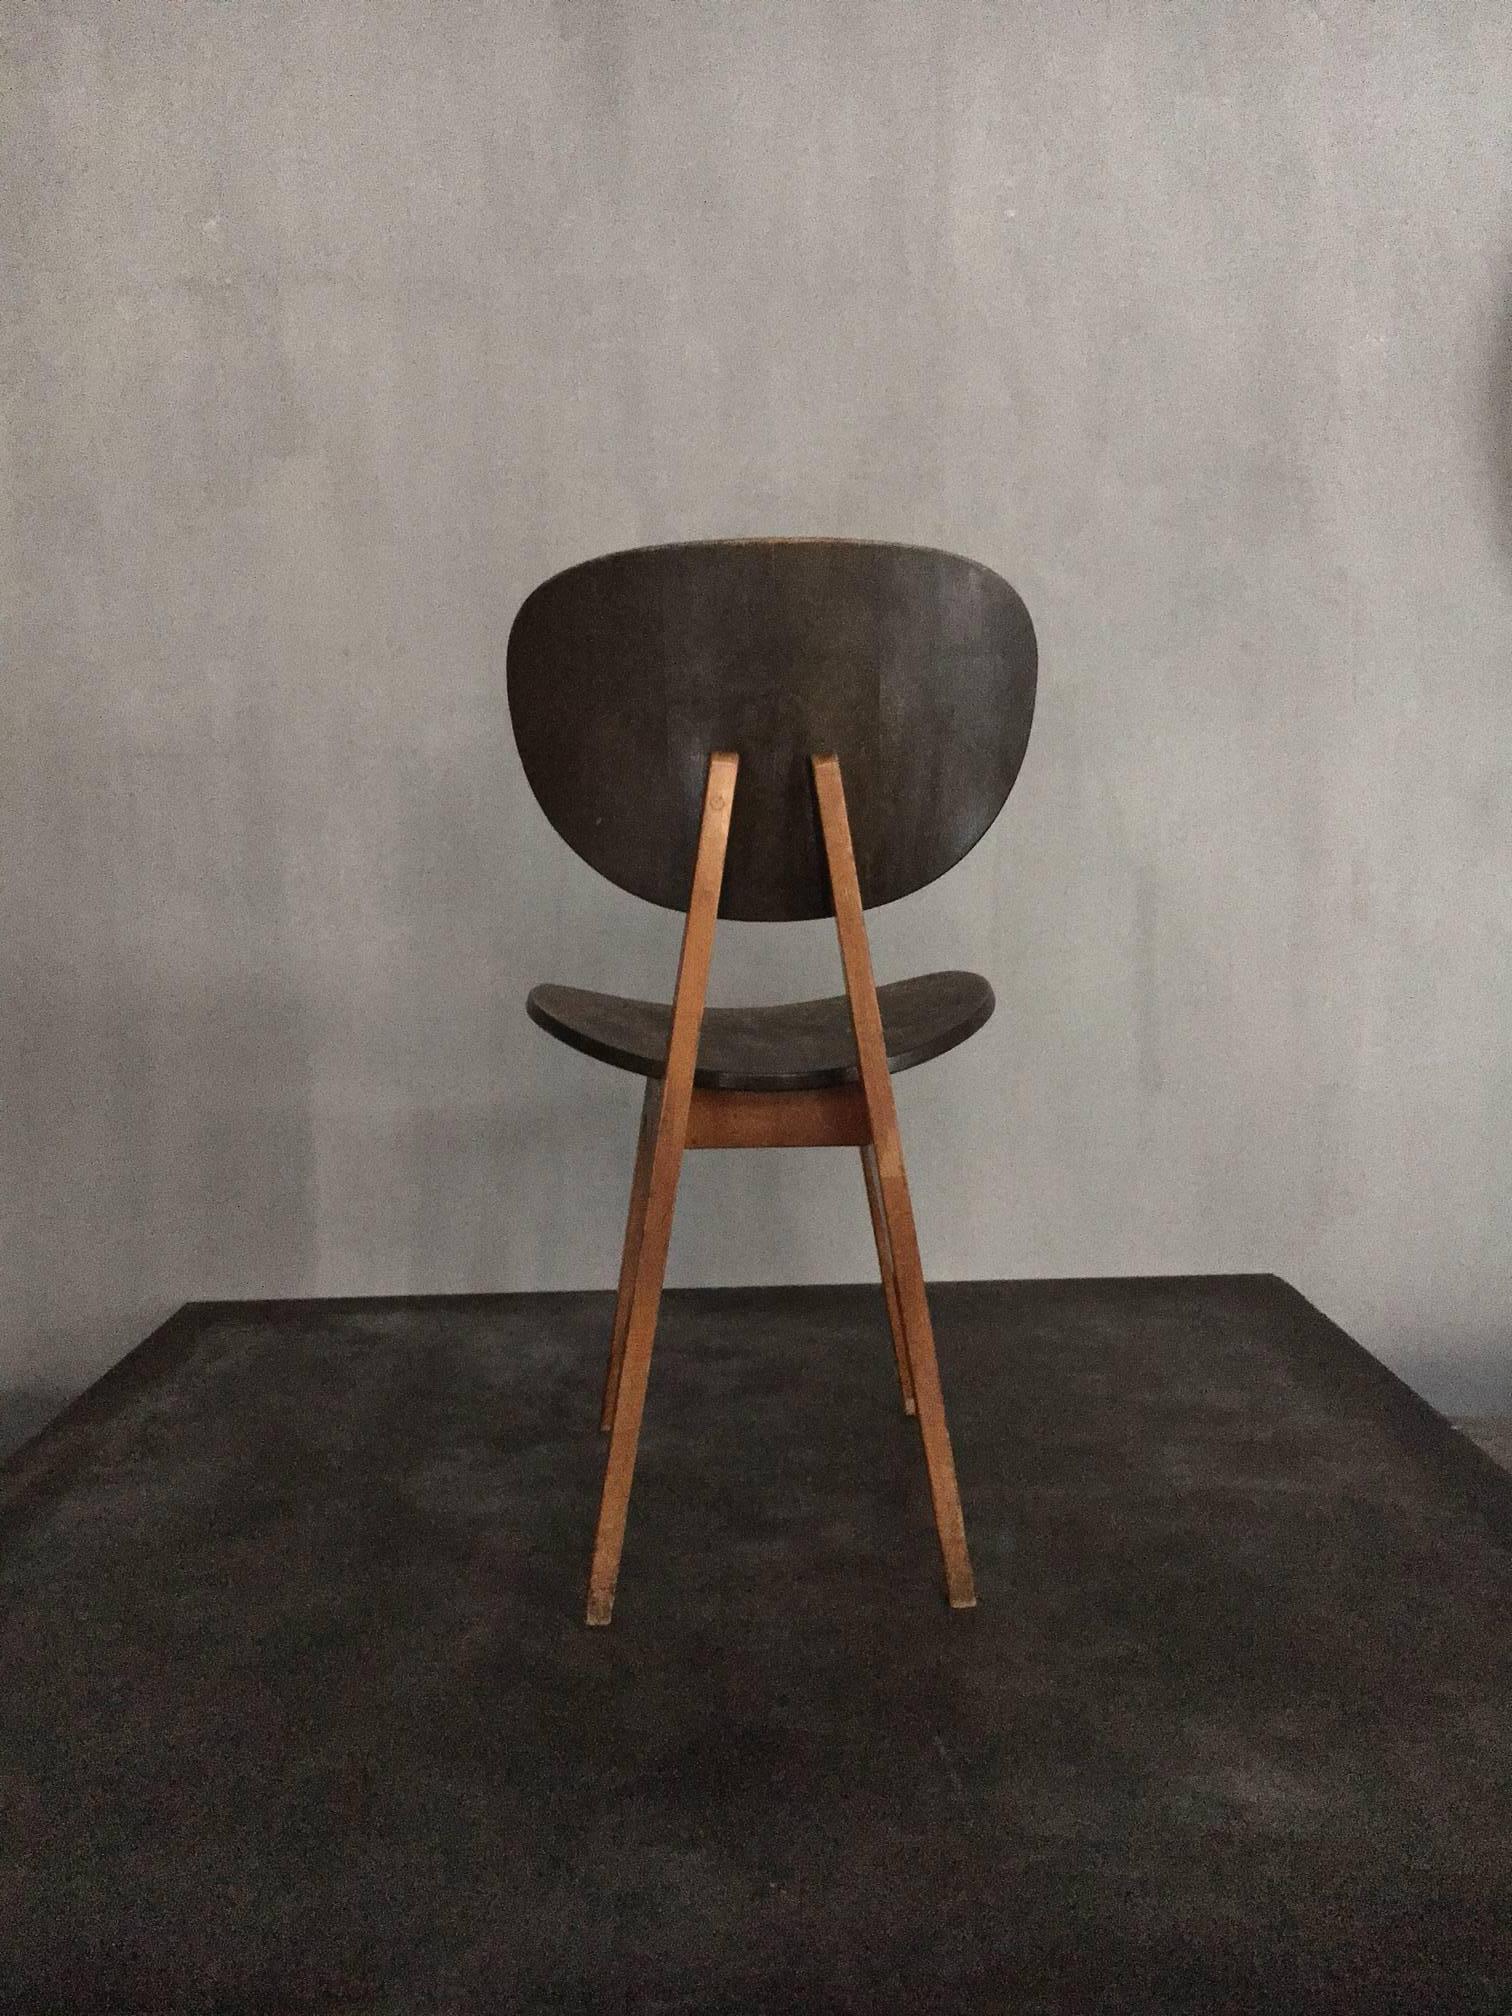 Japanese Chairs by Junzo Sakakura For Sale